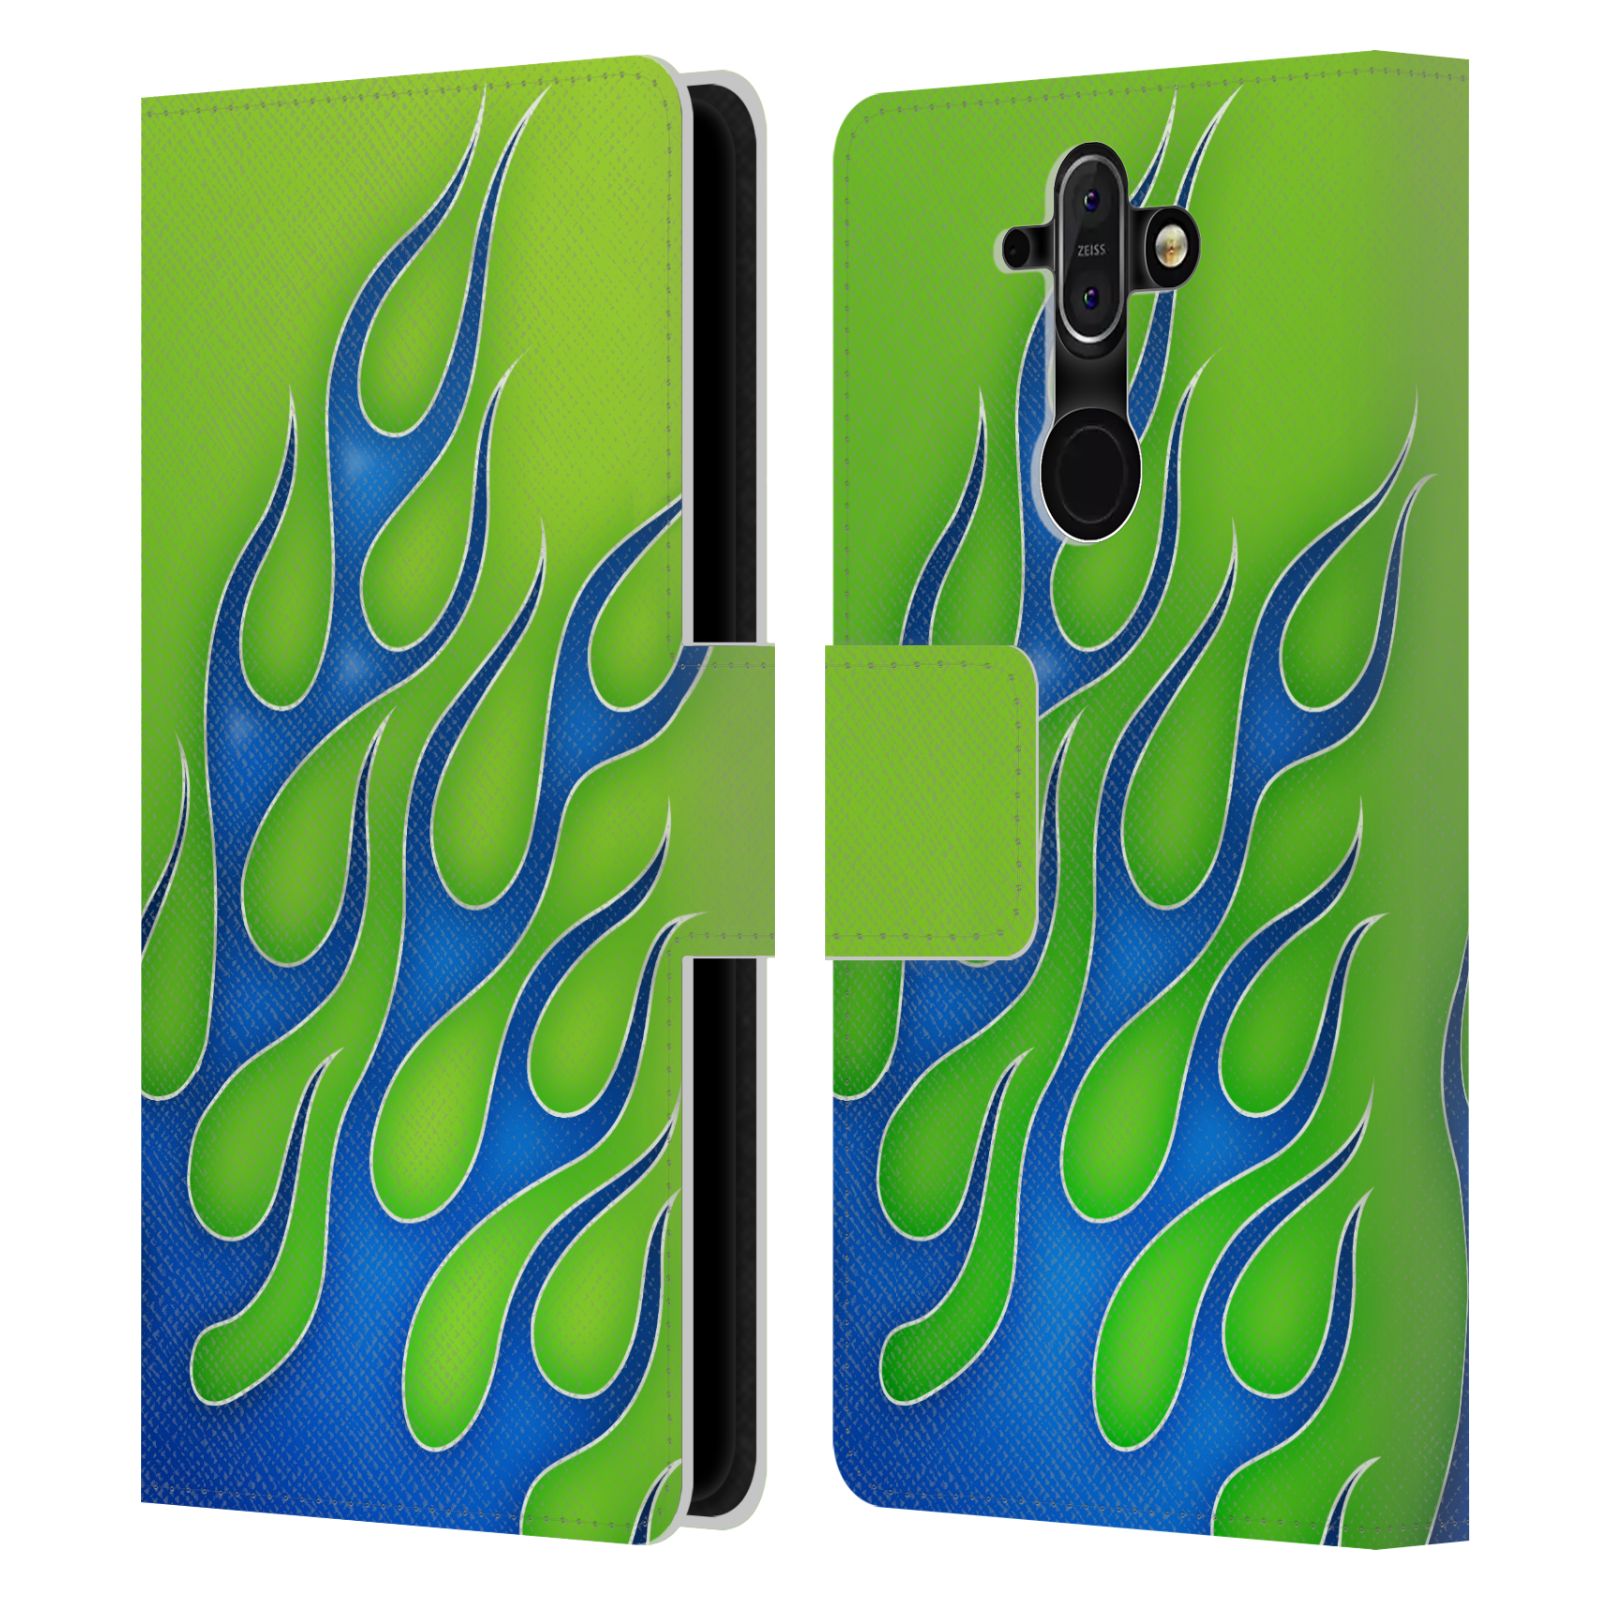 HEAD CASE Flipové pouzdro pro mobil Nokia 8 SIROCCO barevné ohnivé plameny modrá a zelená